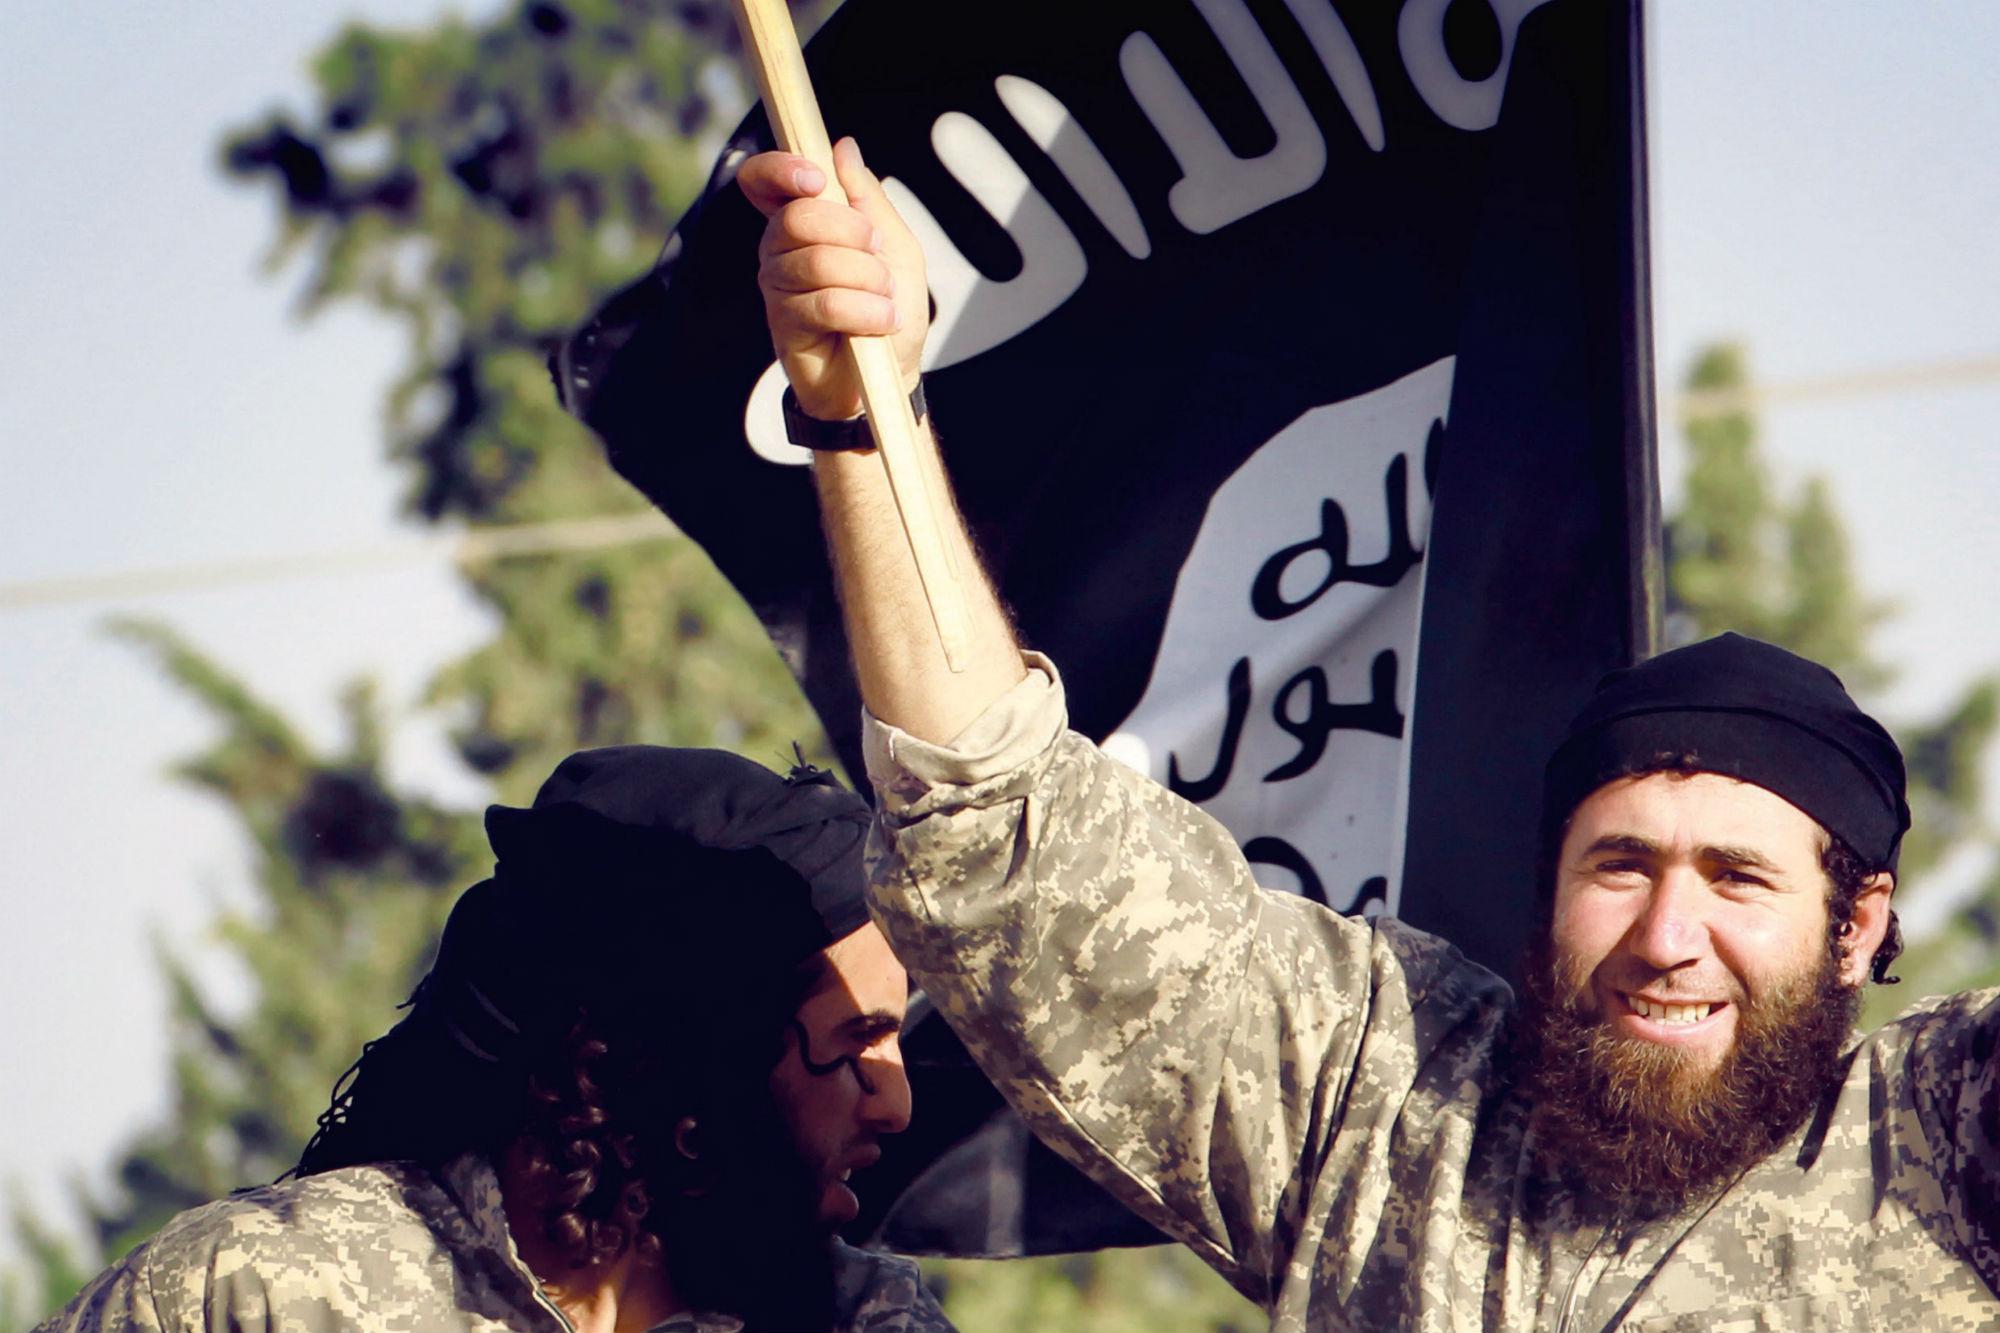 Miliziani dell'Isis